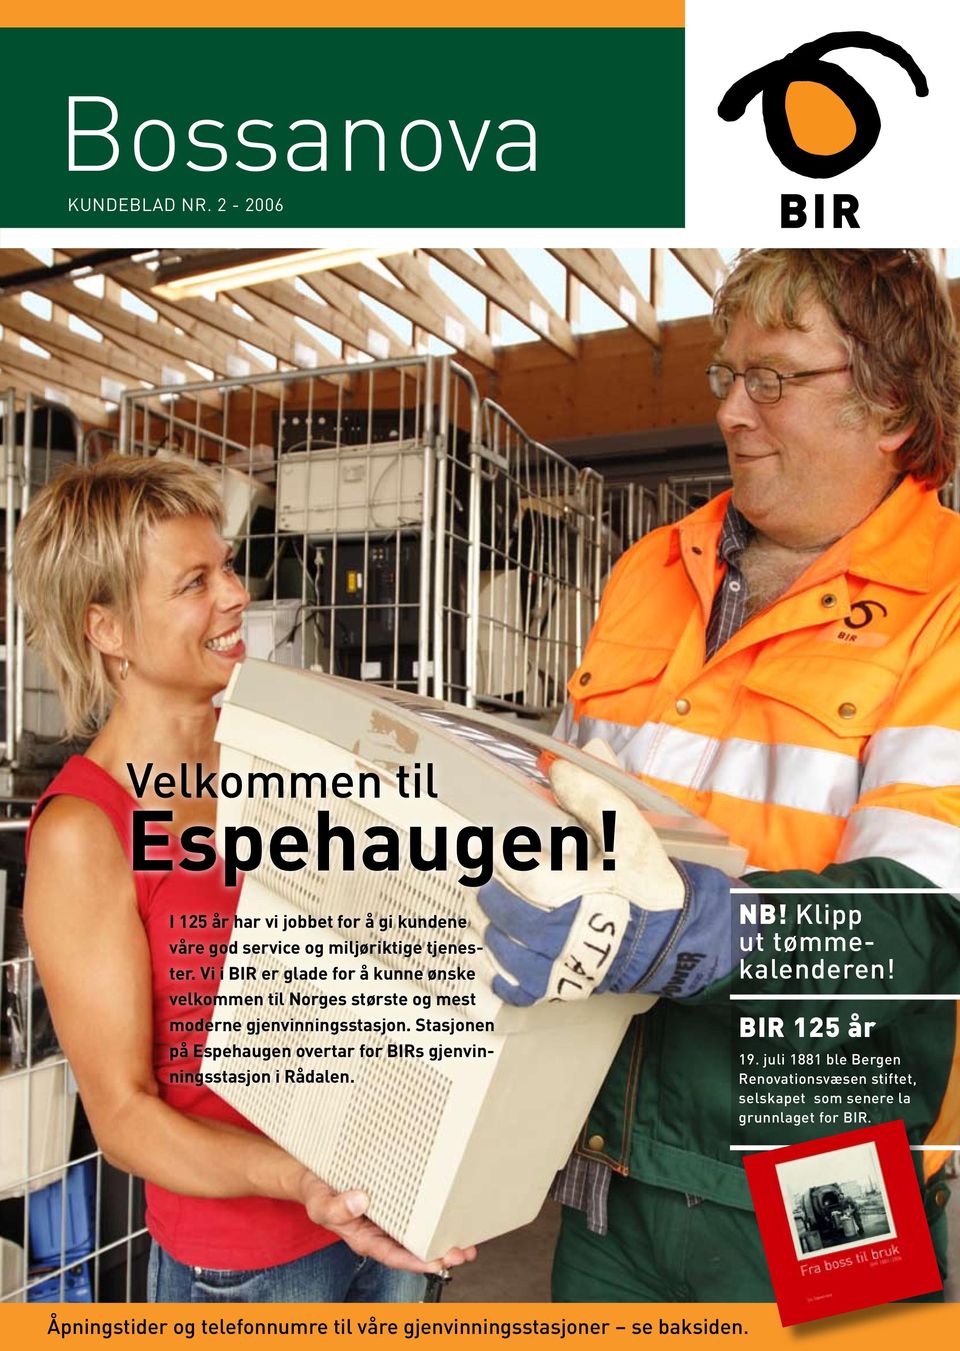 Vi i BIR er glade for å kunne ønske velkommen til Norges største og mest moderne gjenvinningsstasjon.